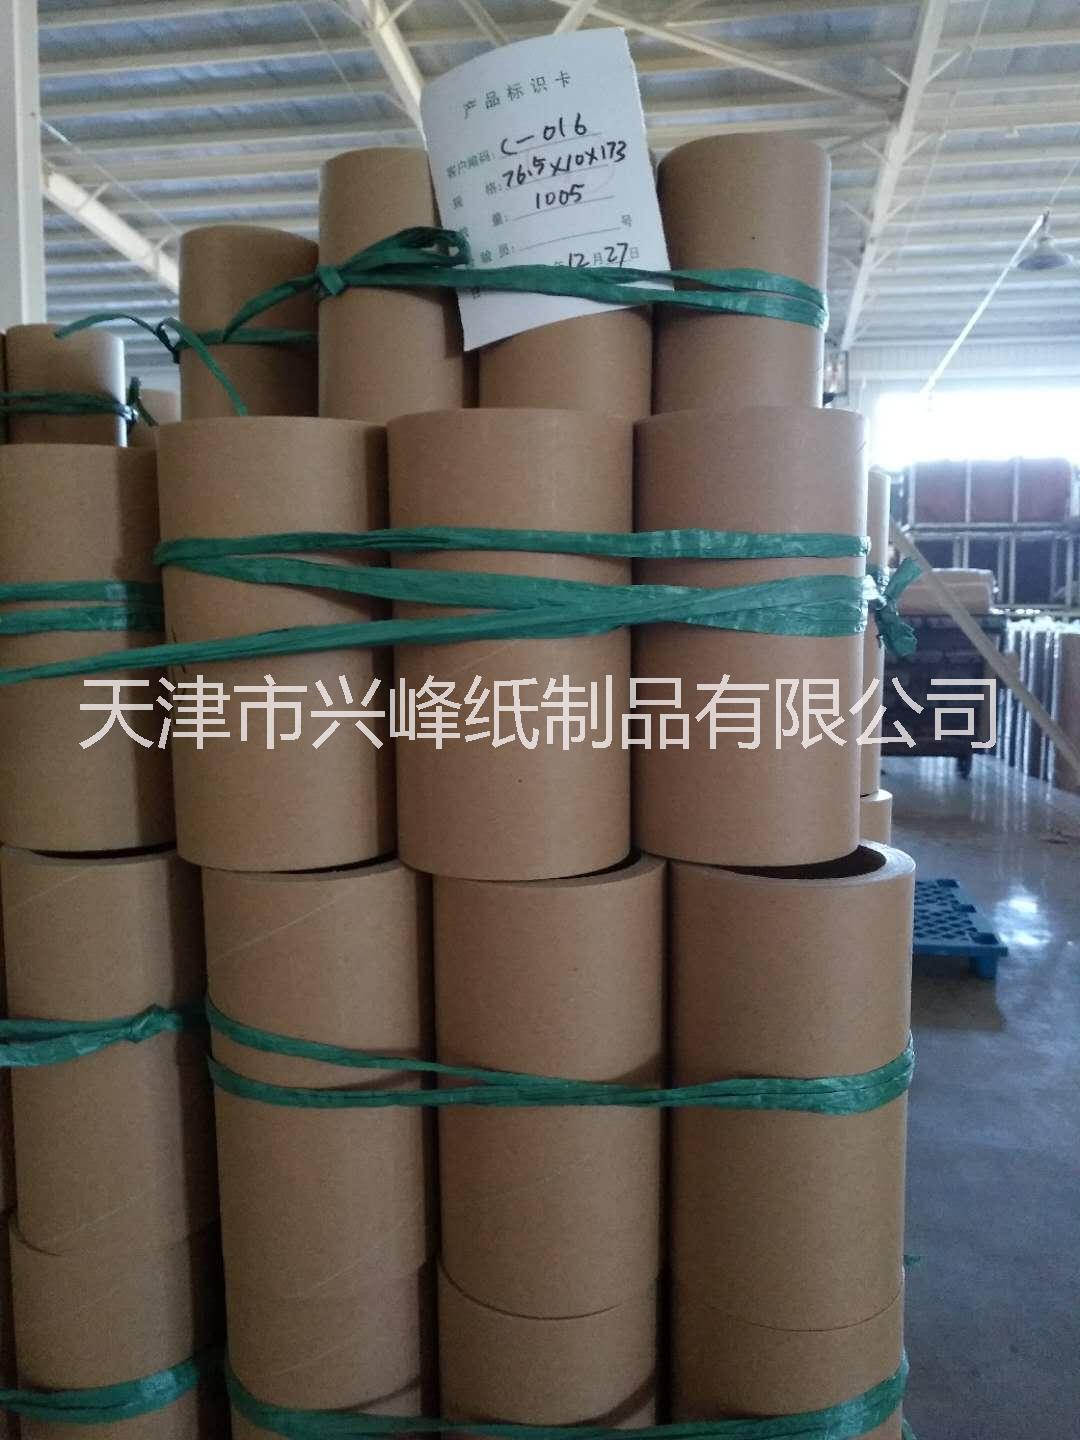 天津市高强度纸芯管，适合各种膜类收卷厂家高强度纸芯管，适合各种膜类收卷